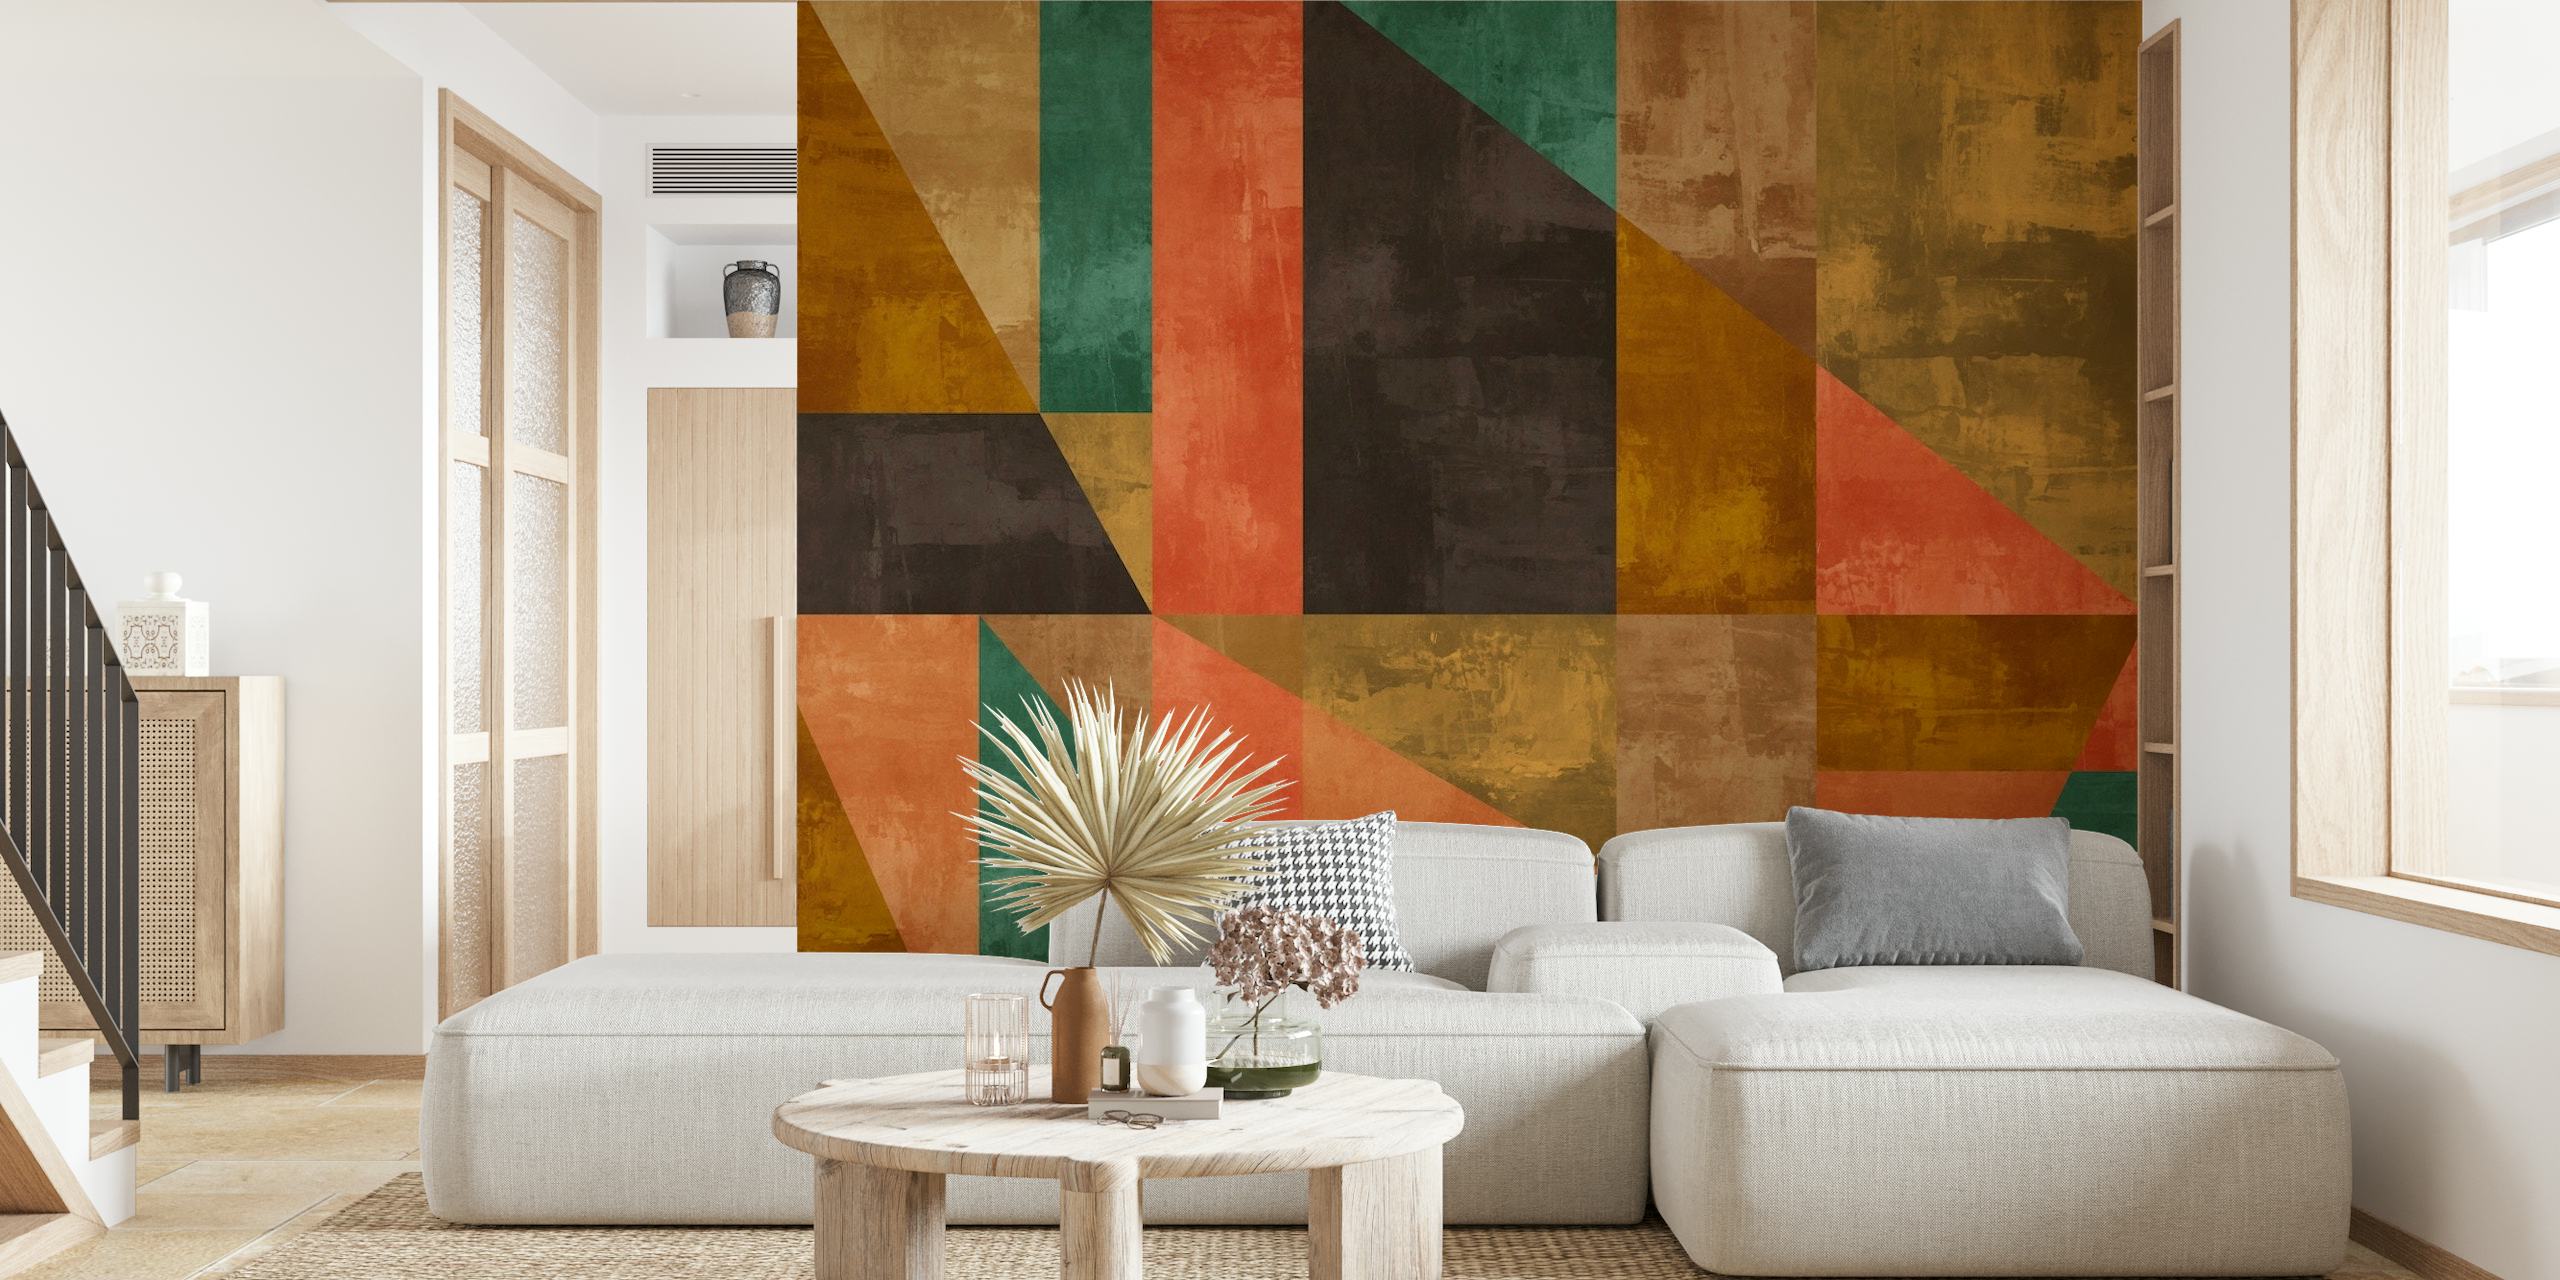 Abstract rustiek schilderij muurschildering met geometrische vormen in aardetinten en warme amber